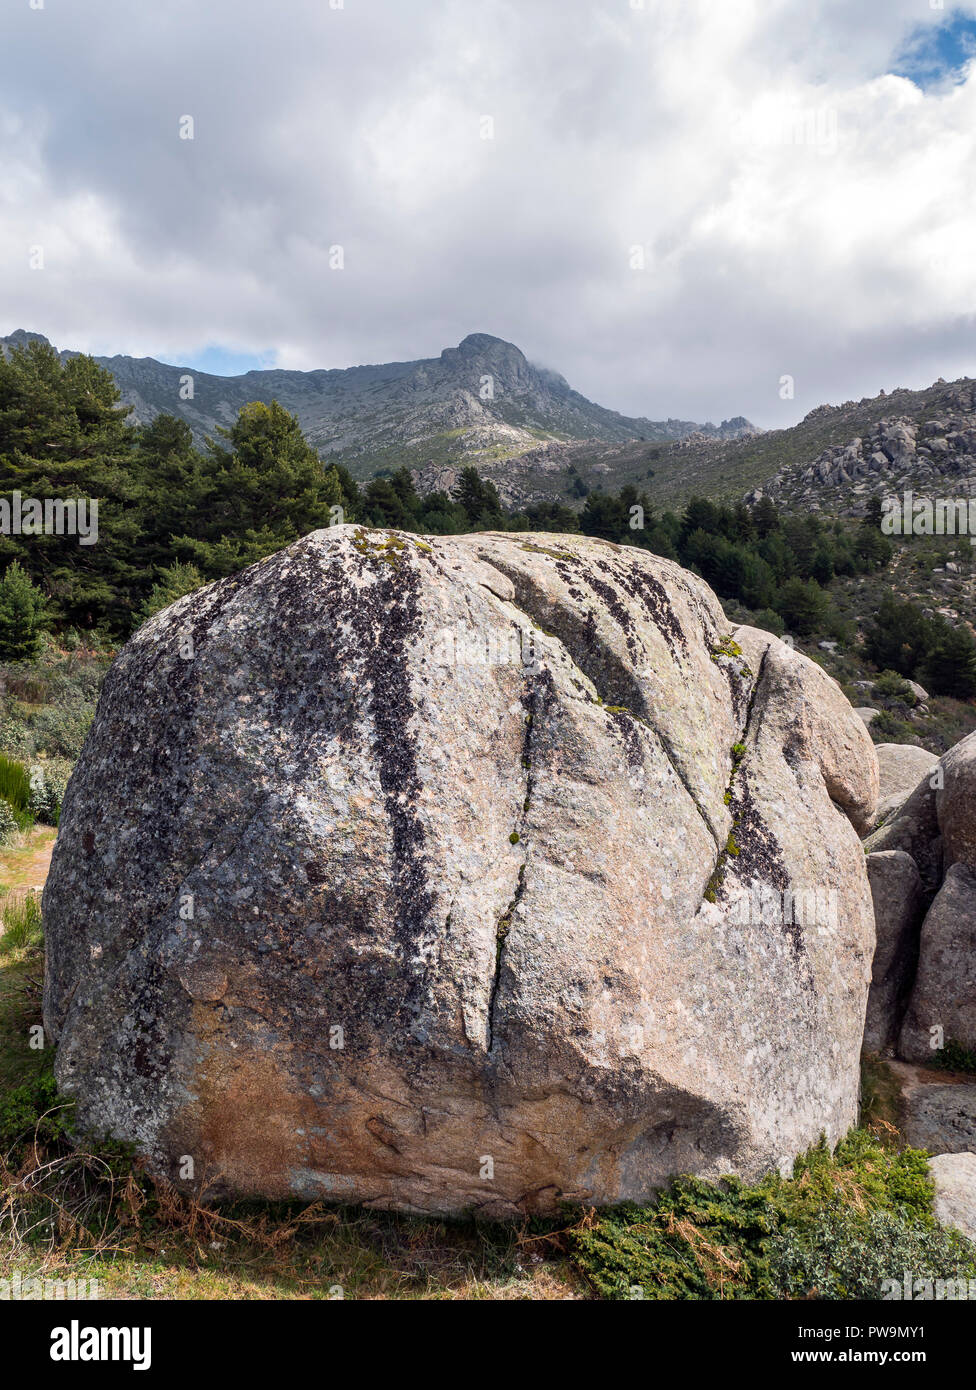 Formaciones graníticas. Valle de la Barranca en la Sierra de Guadarrama y dentro del 'Parque regional de la Cuenca Alta del Manzanares' (Reserva de la Foto Stock